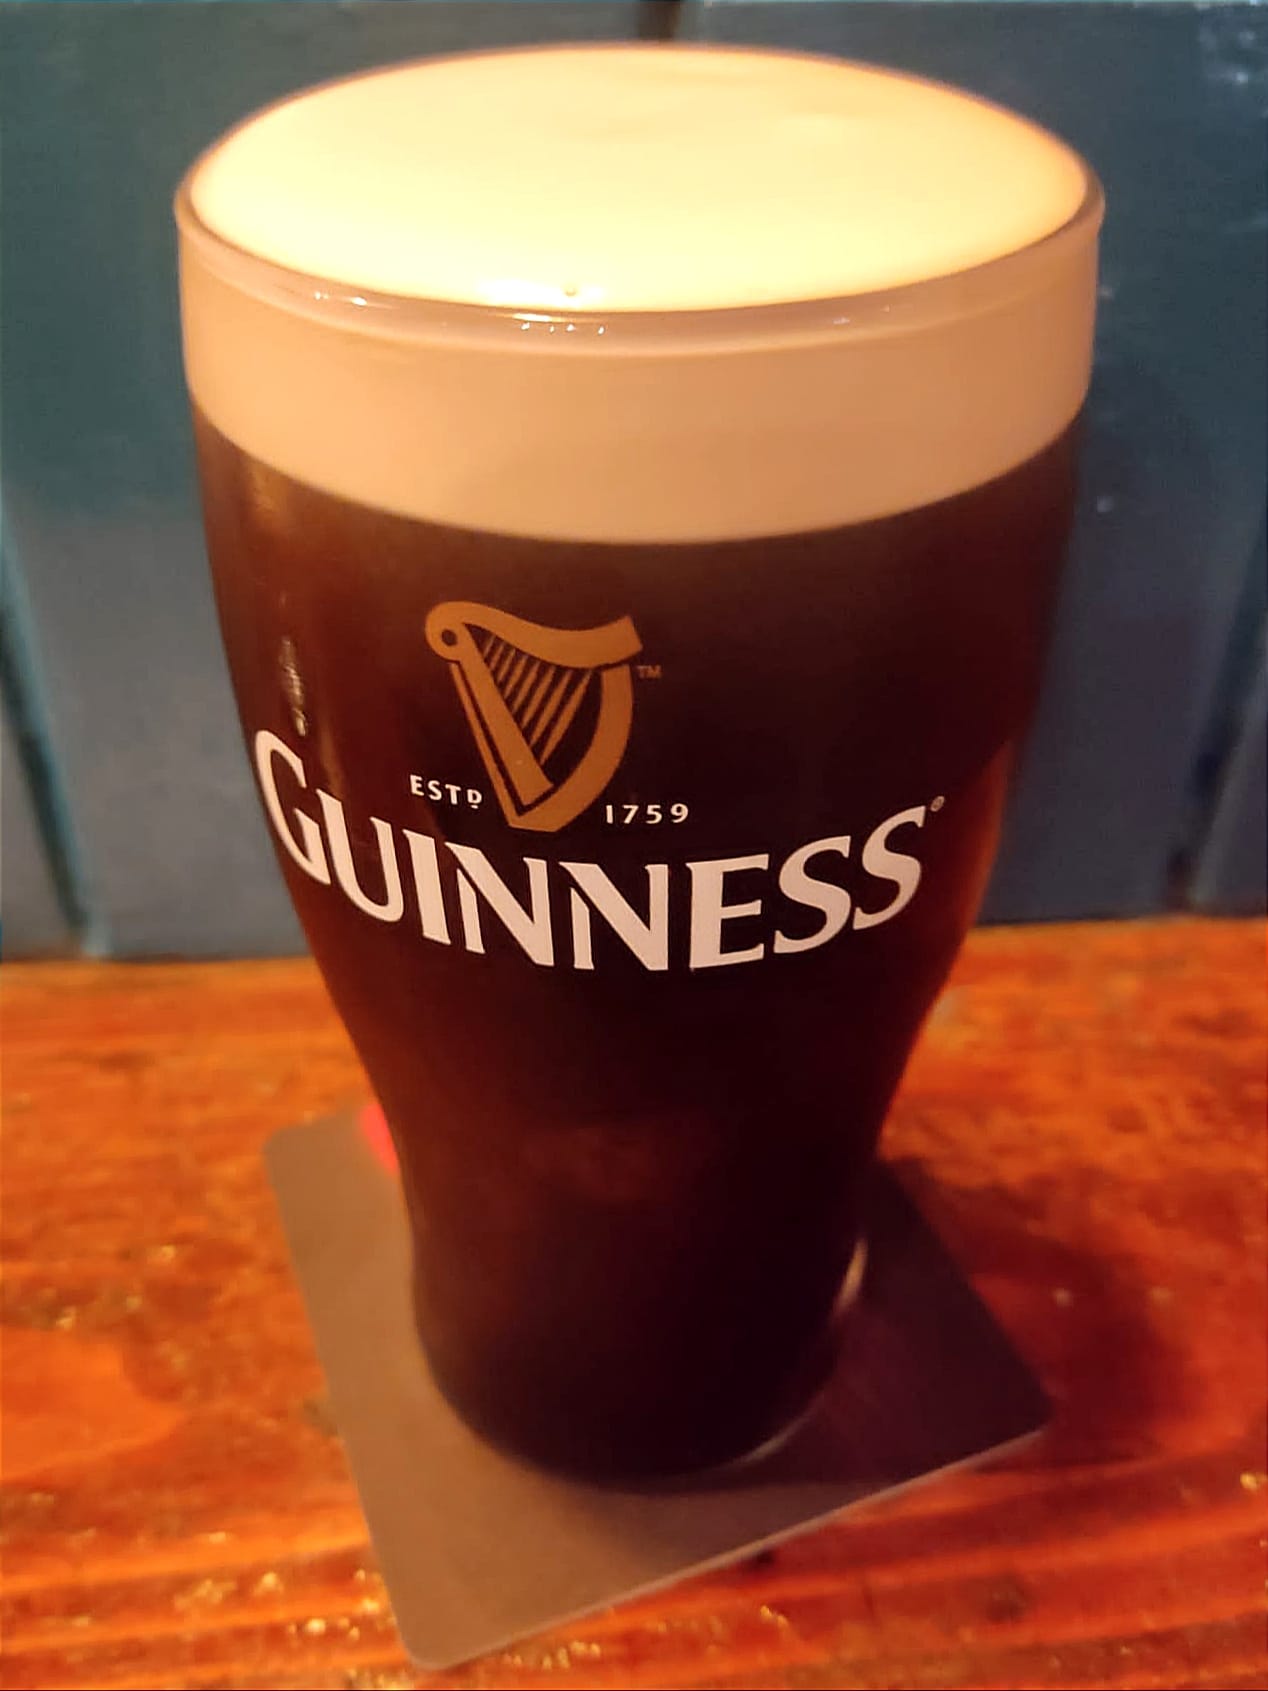 La Birra Guinness (foto D. Cuomo - NonSoloRisparmio)